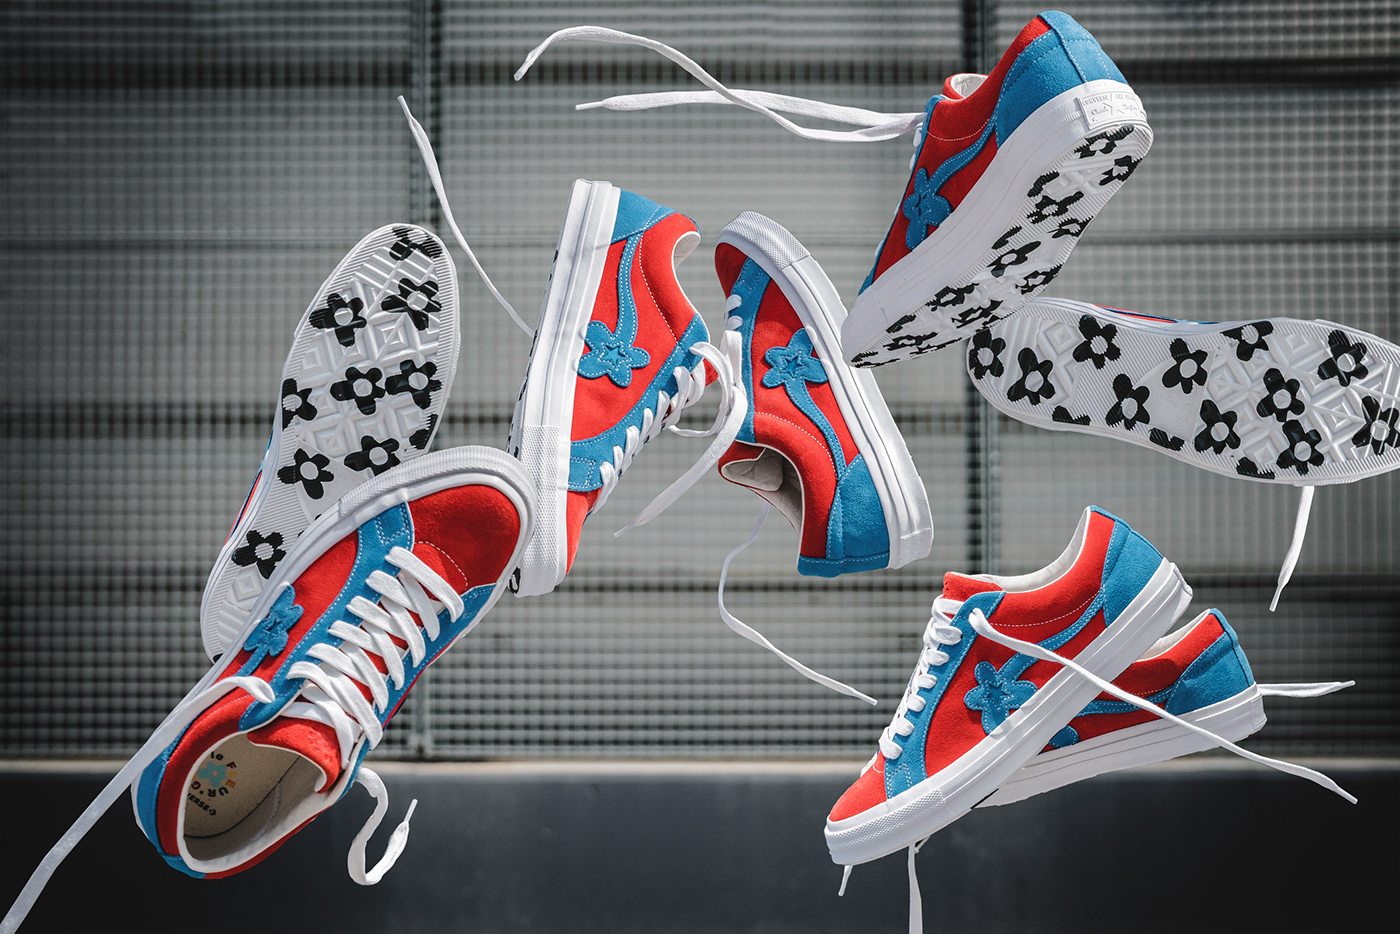 sneaker Nike adidas converse Aasics reebok footwear Street culture solebox